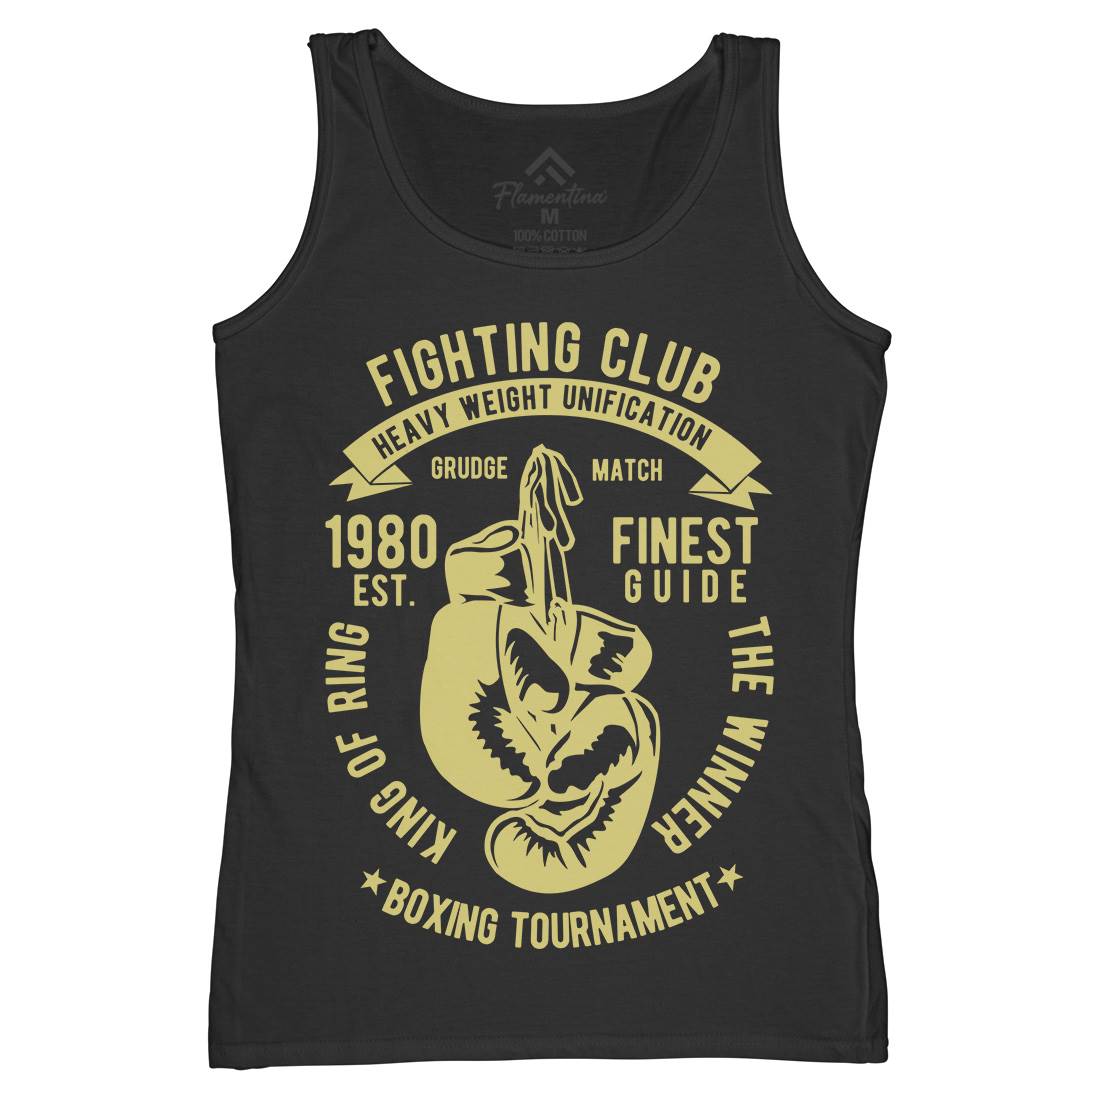 Fighting Club Womens Organic Tank Top Vest Sport B402